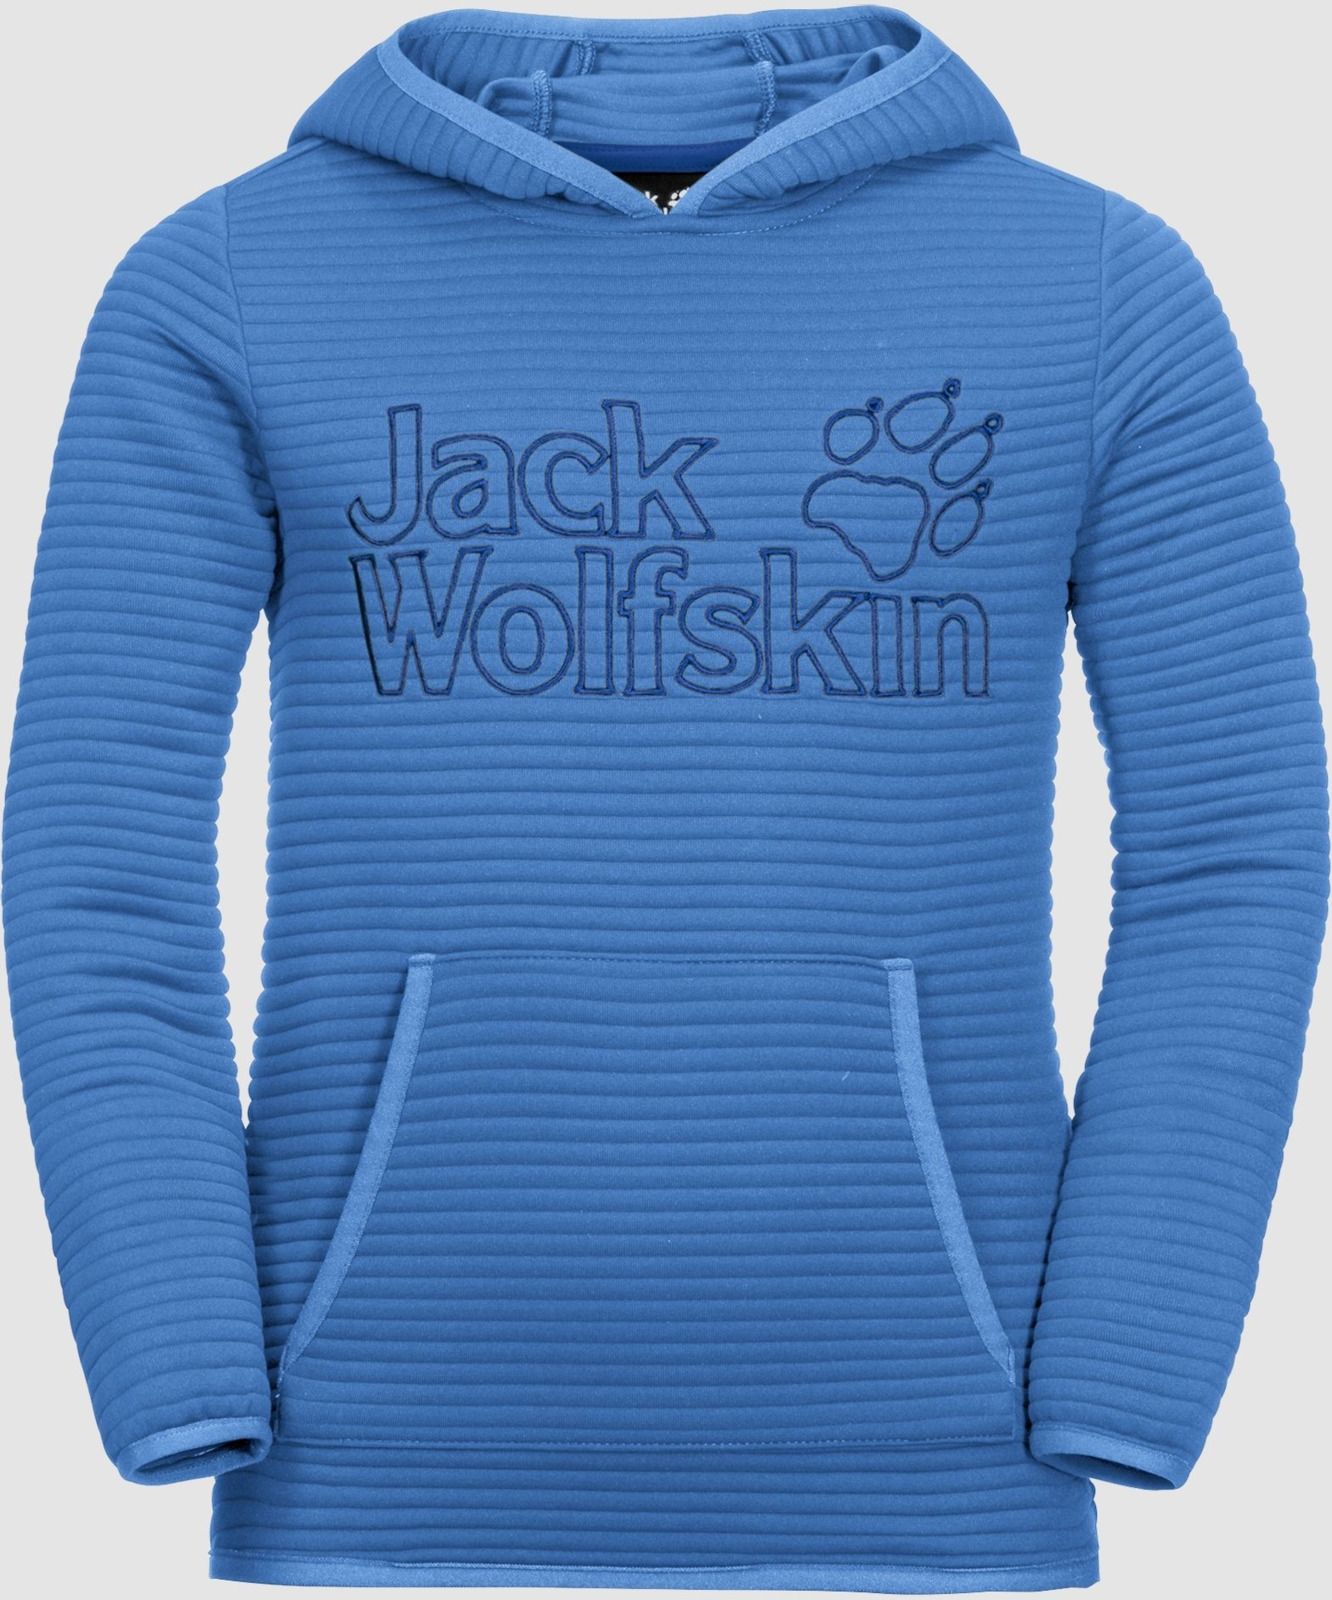   Jack Wolfskin Modesto Hoody, : -. 1607721-1515.  164/170